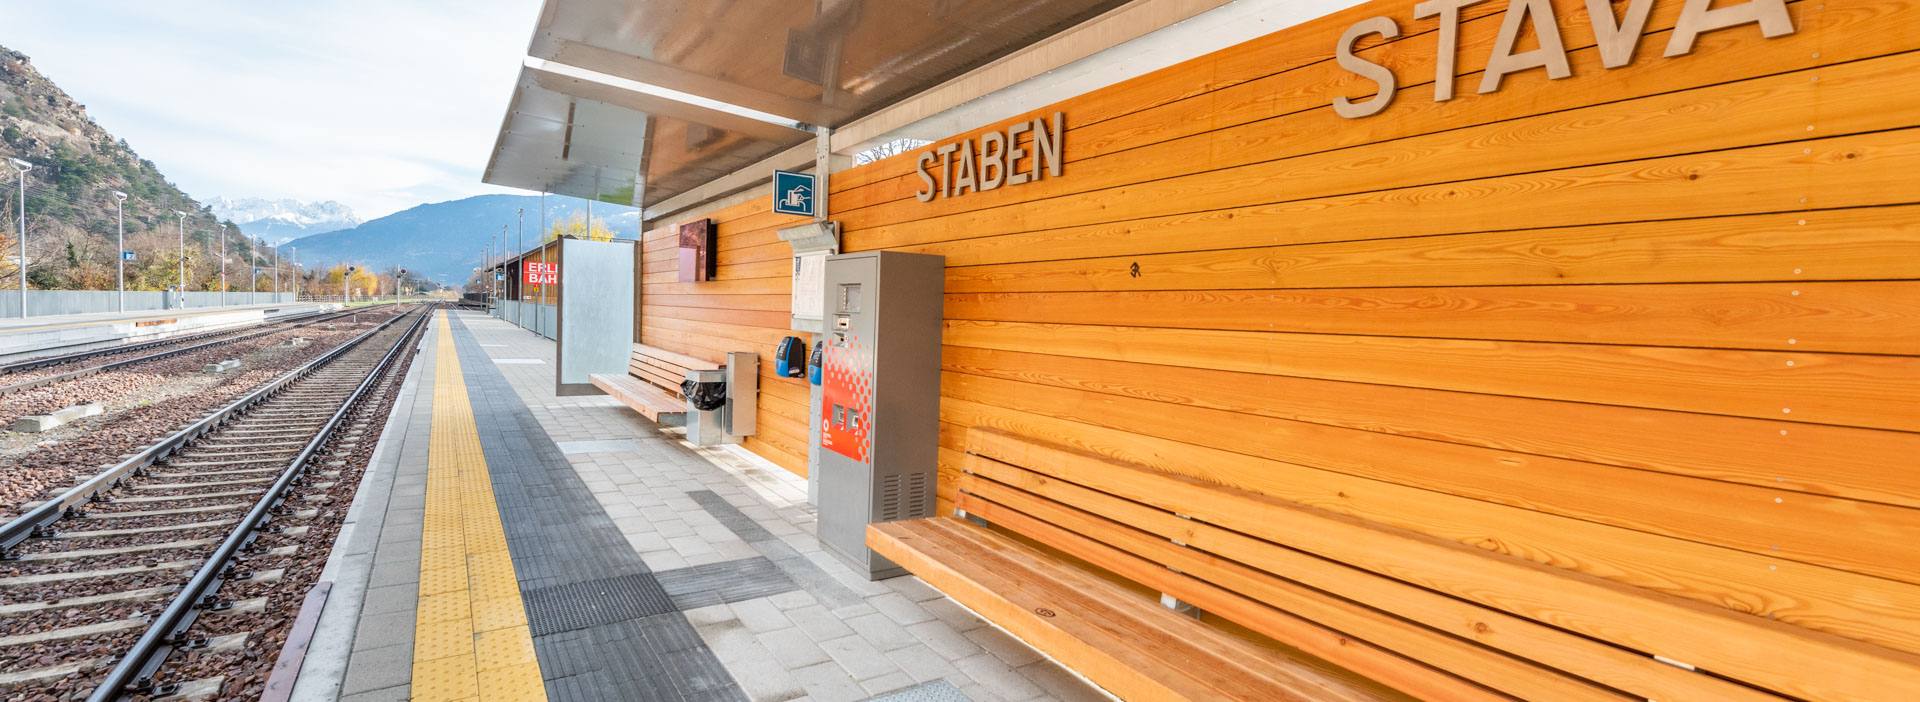 Bahnhof Staben